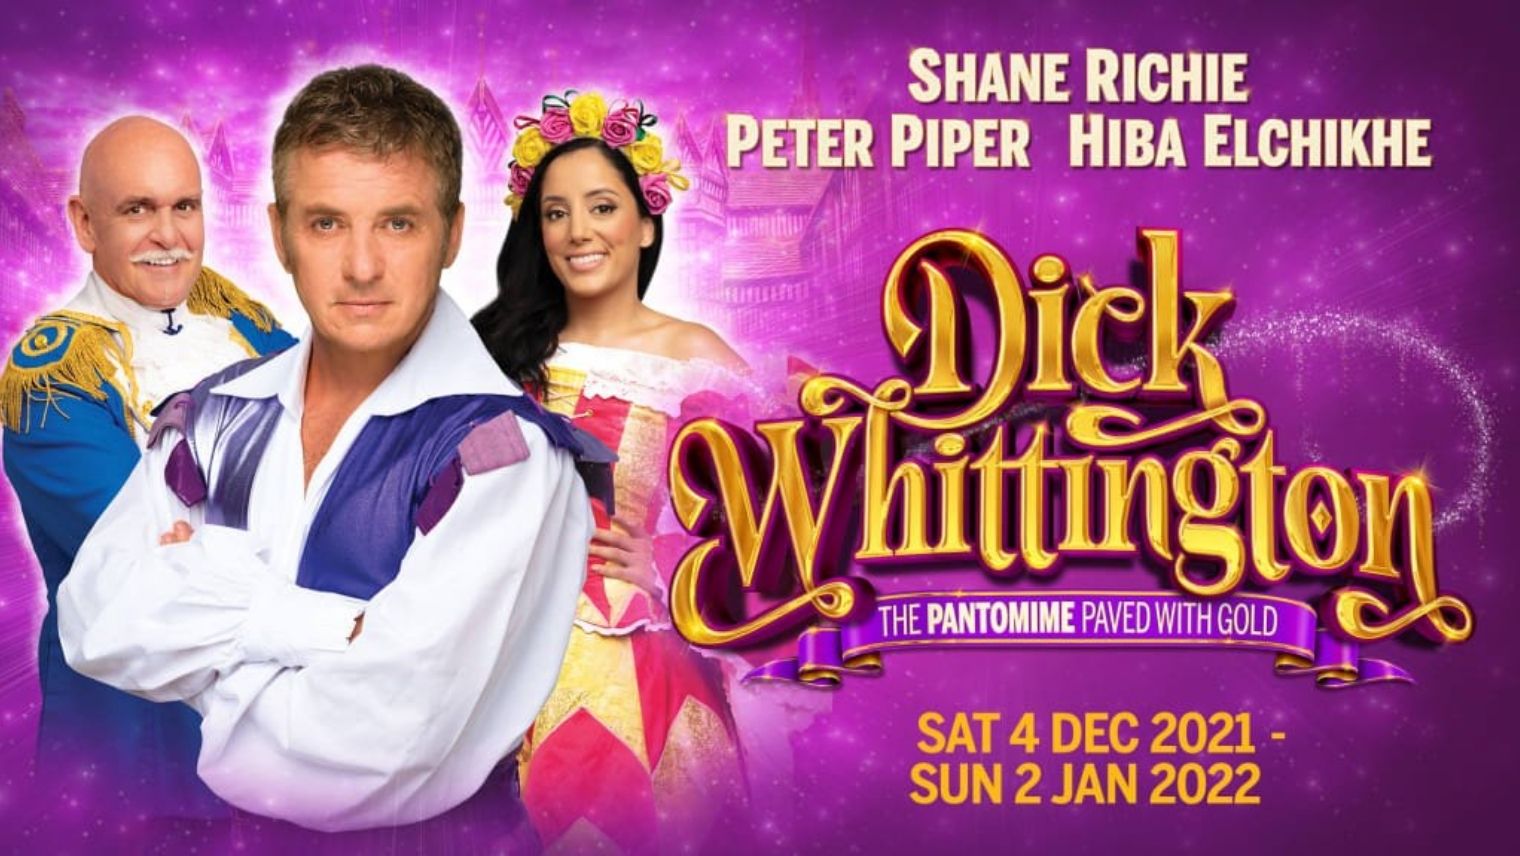 Dick Whittington Pantomime at New Wimbledon Theatre